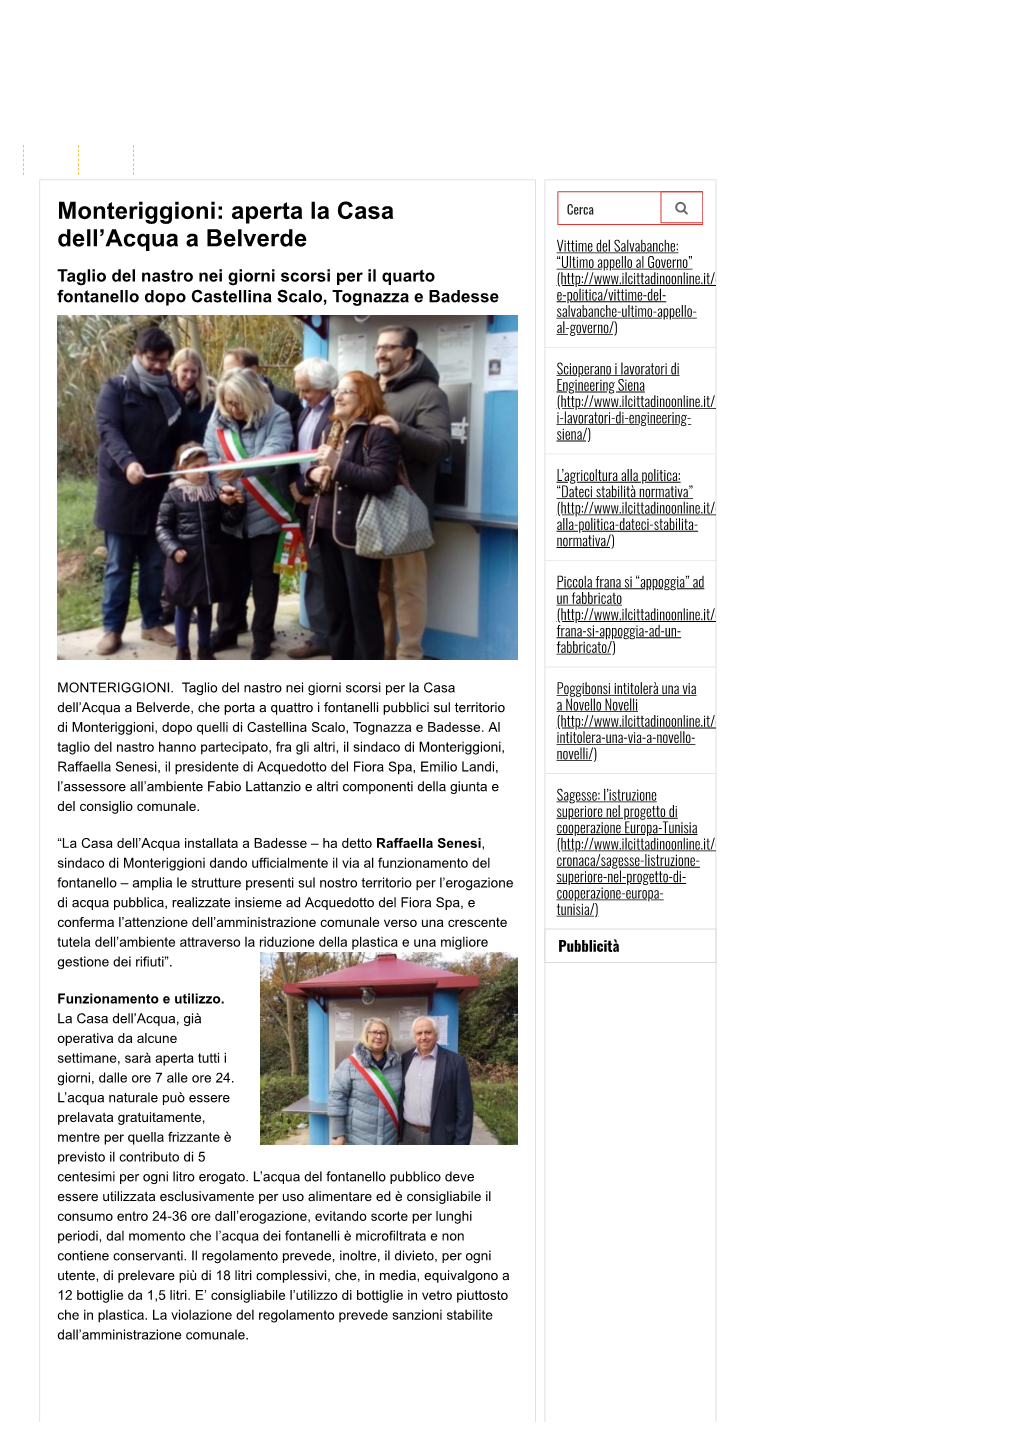 Monteriggioni: Aperta La Casa Dell'acqua a Belverde